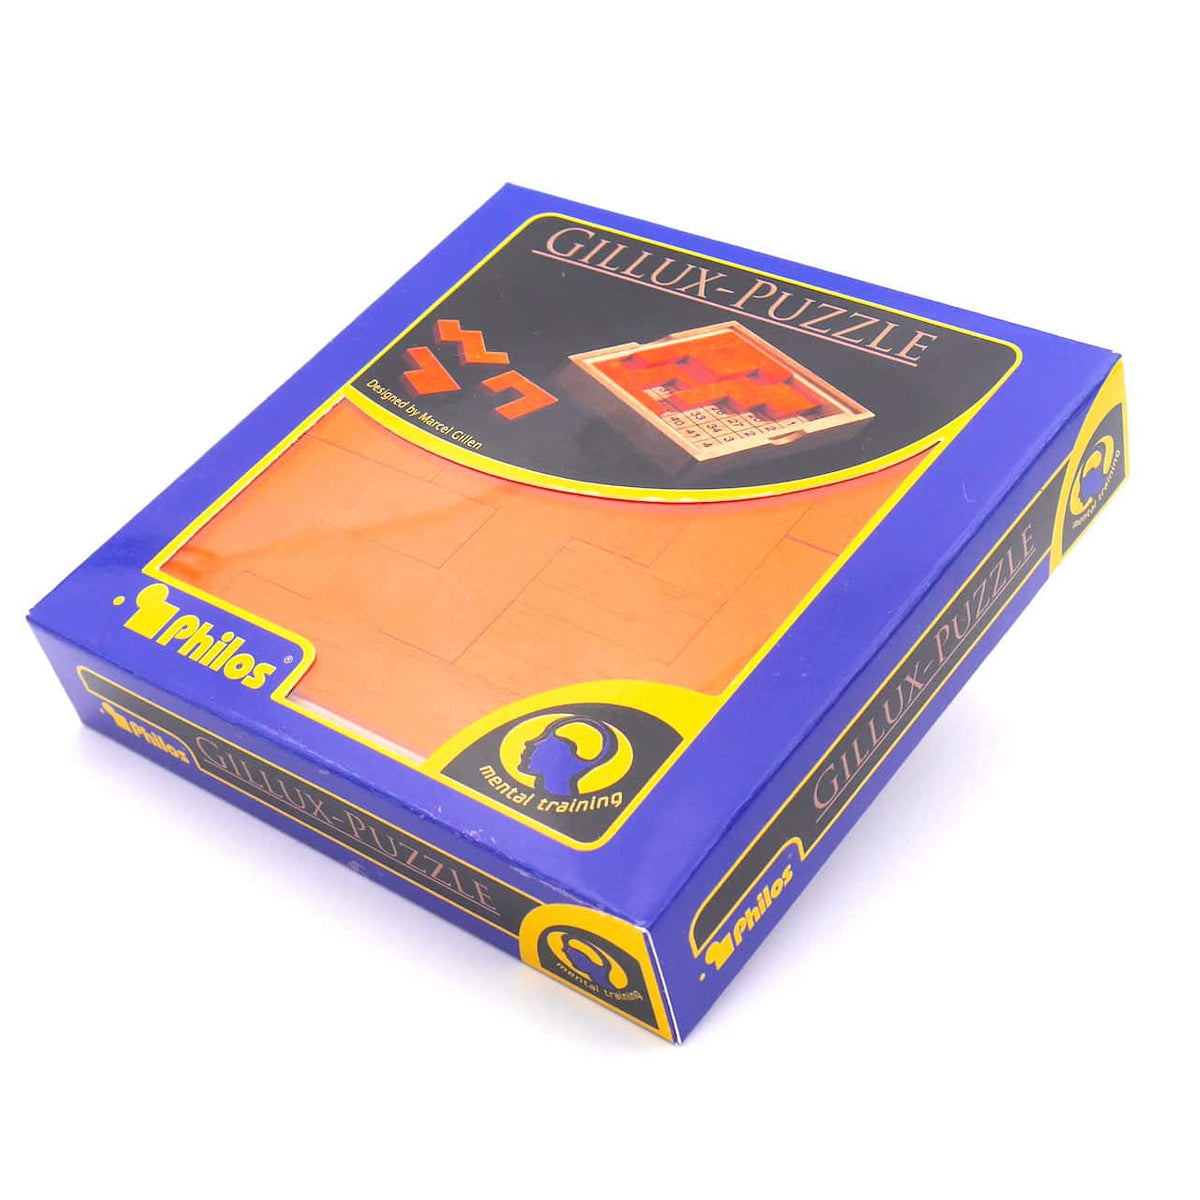 GILLUX-PUZZLE - tolles Holzspiel mit vielen Legemöglichkeiten